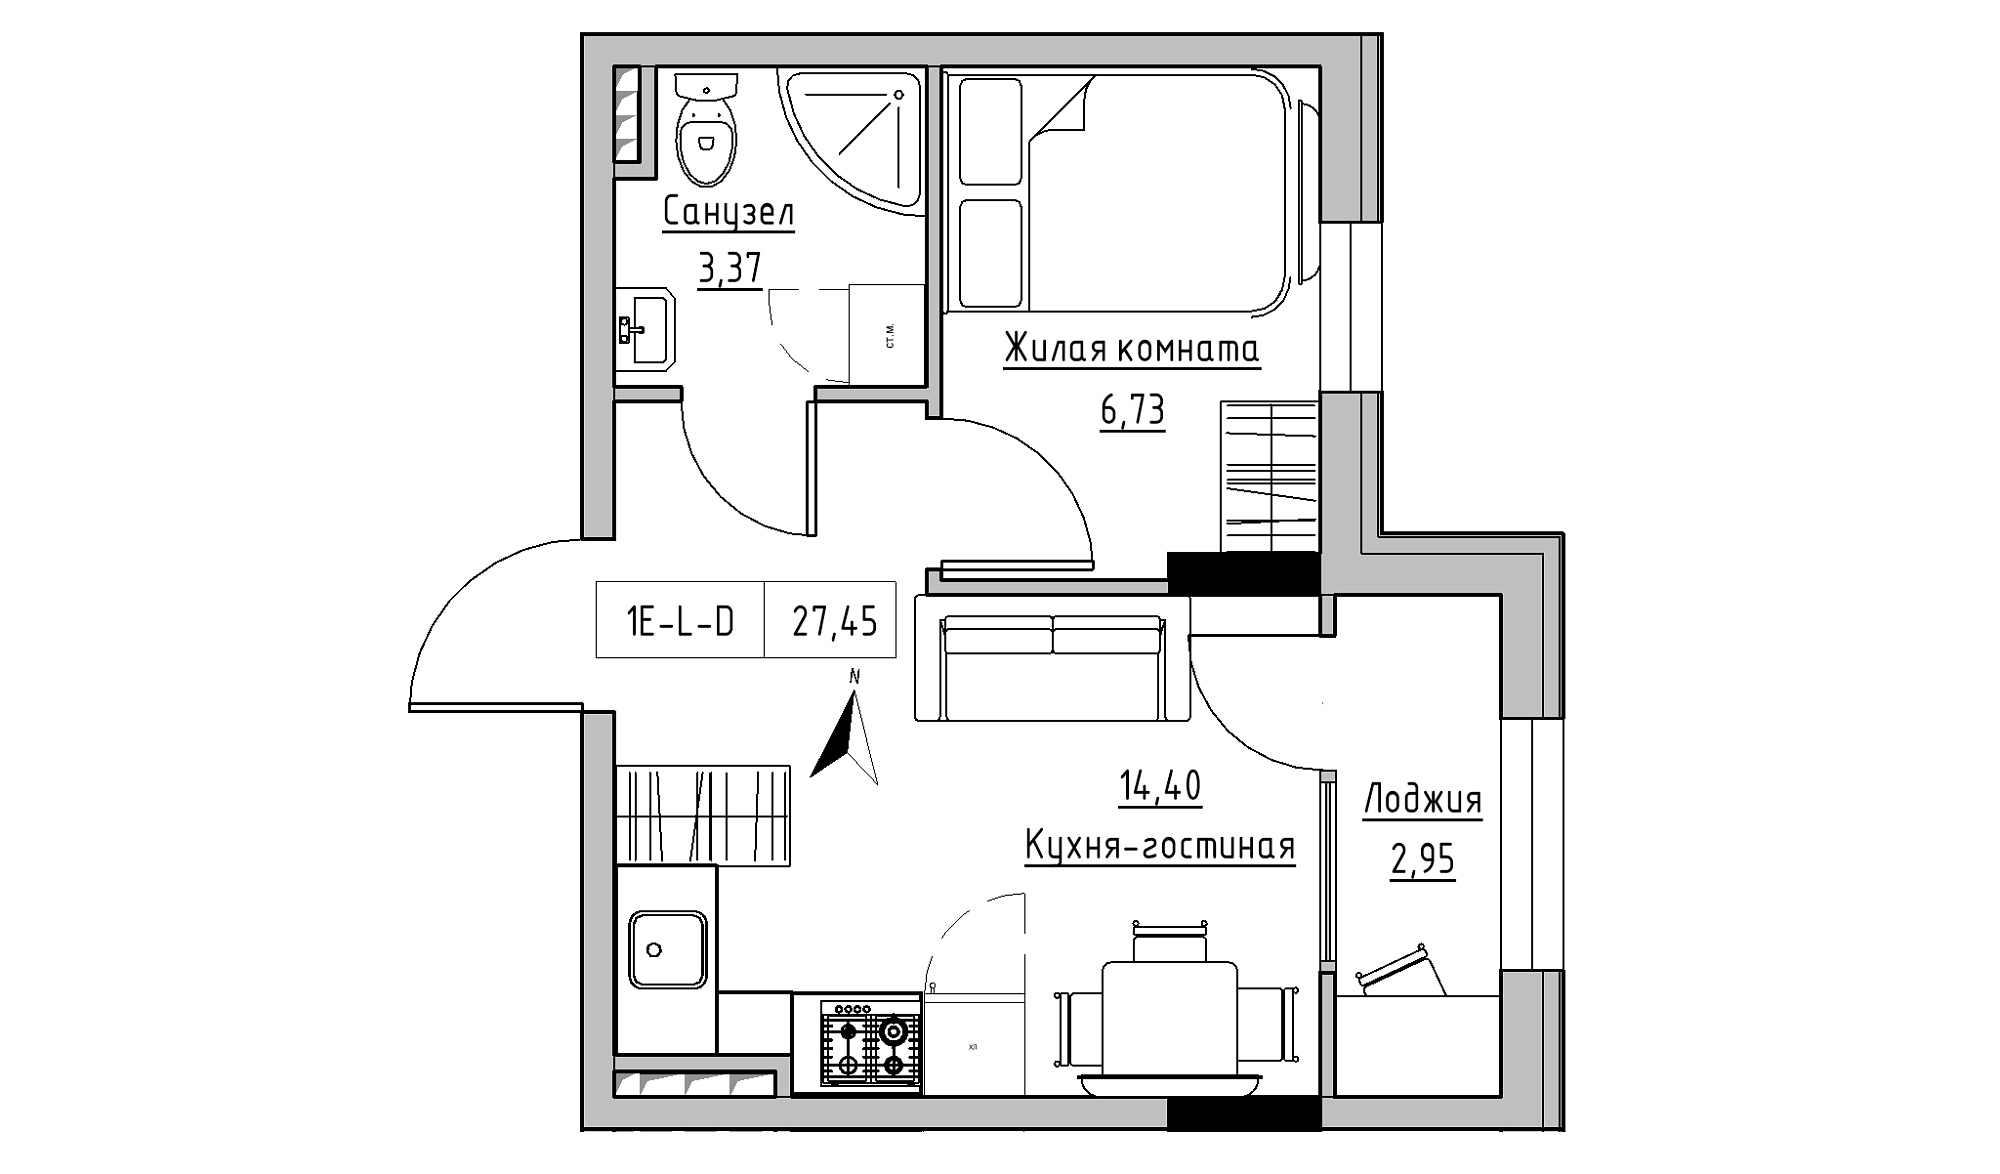 Планування 1-к квартира площею 27.45м2, KS-025-03/0001.